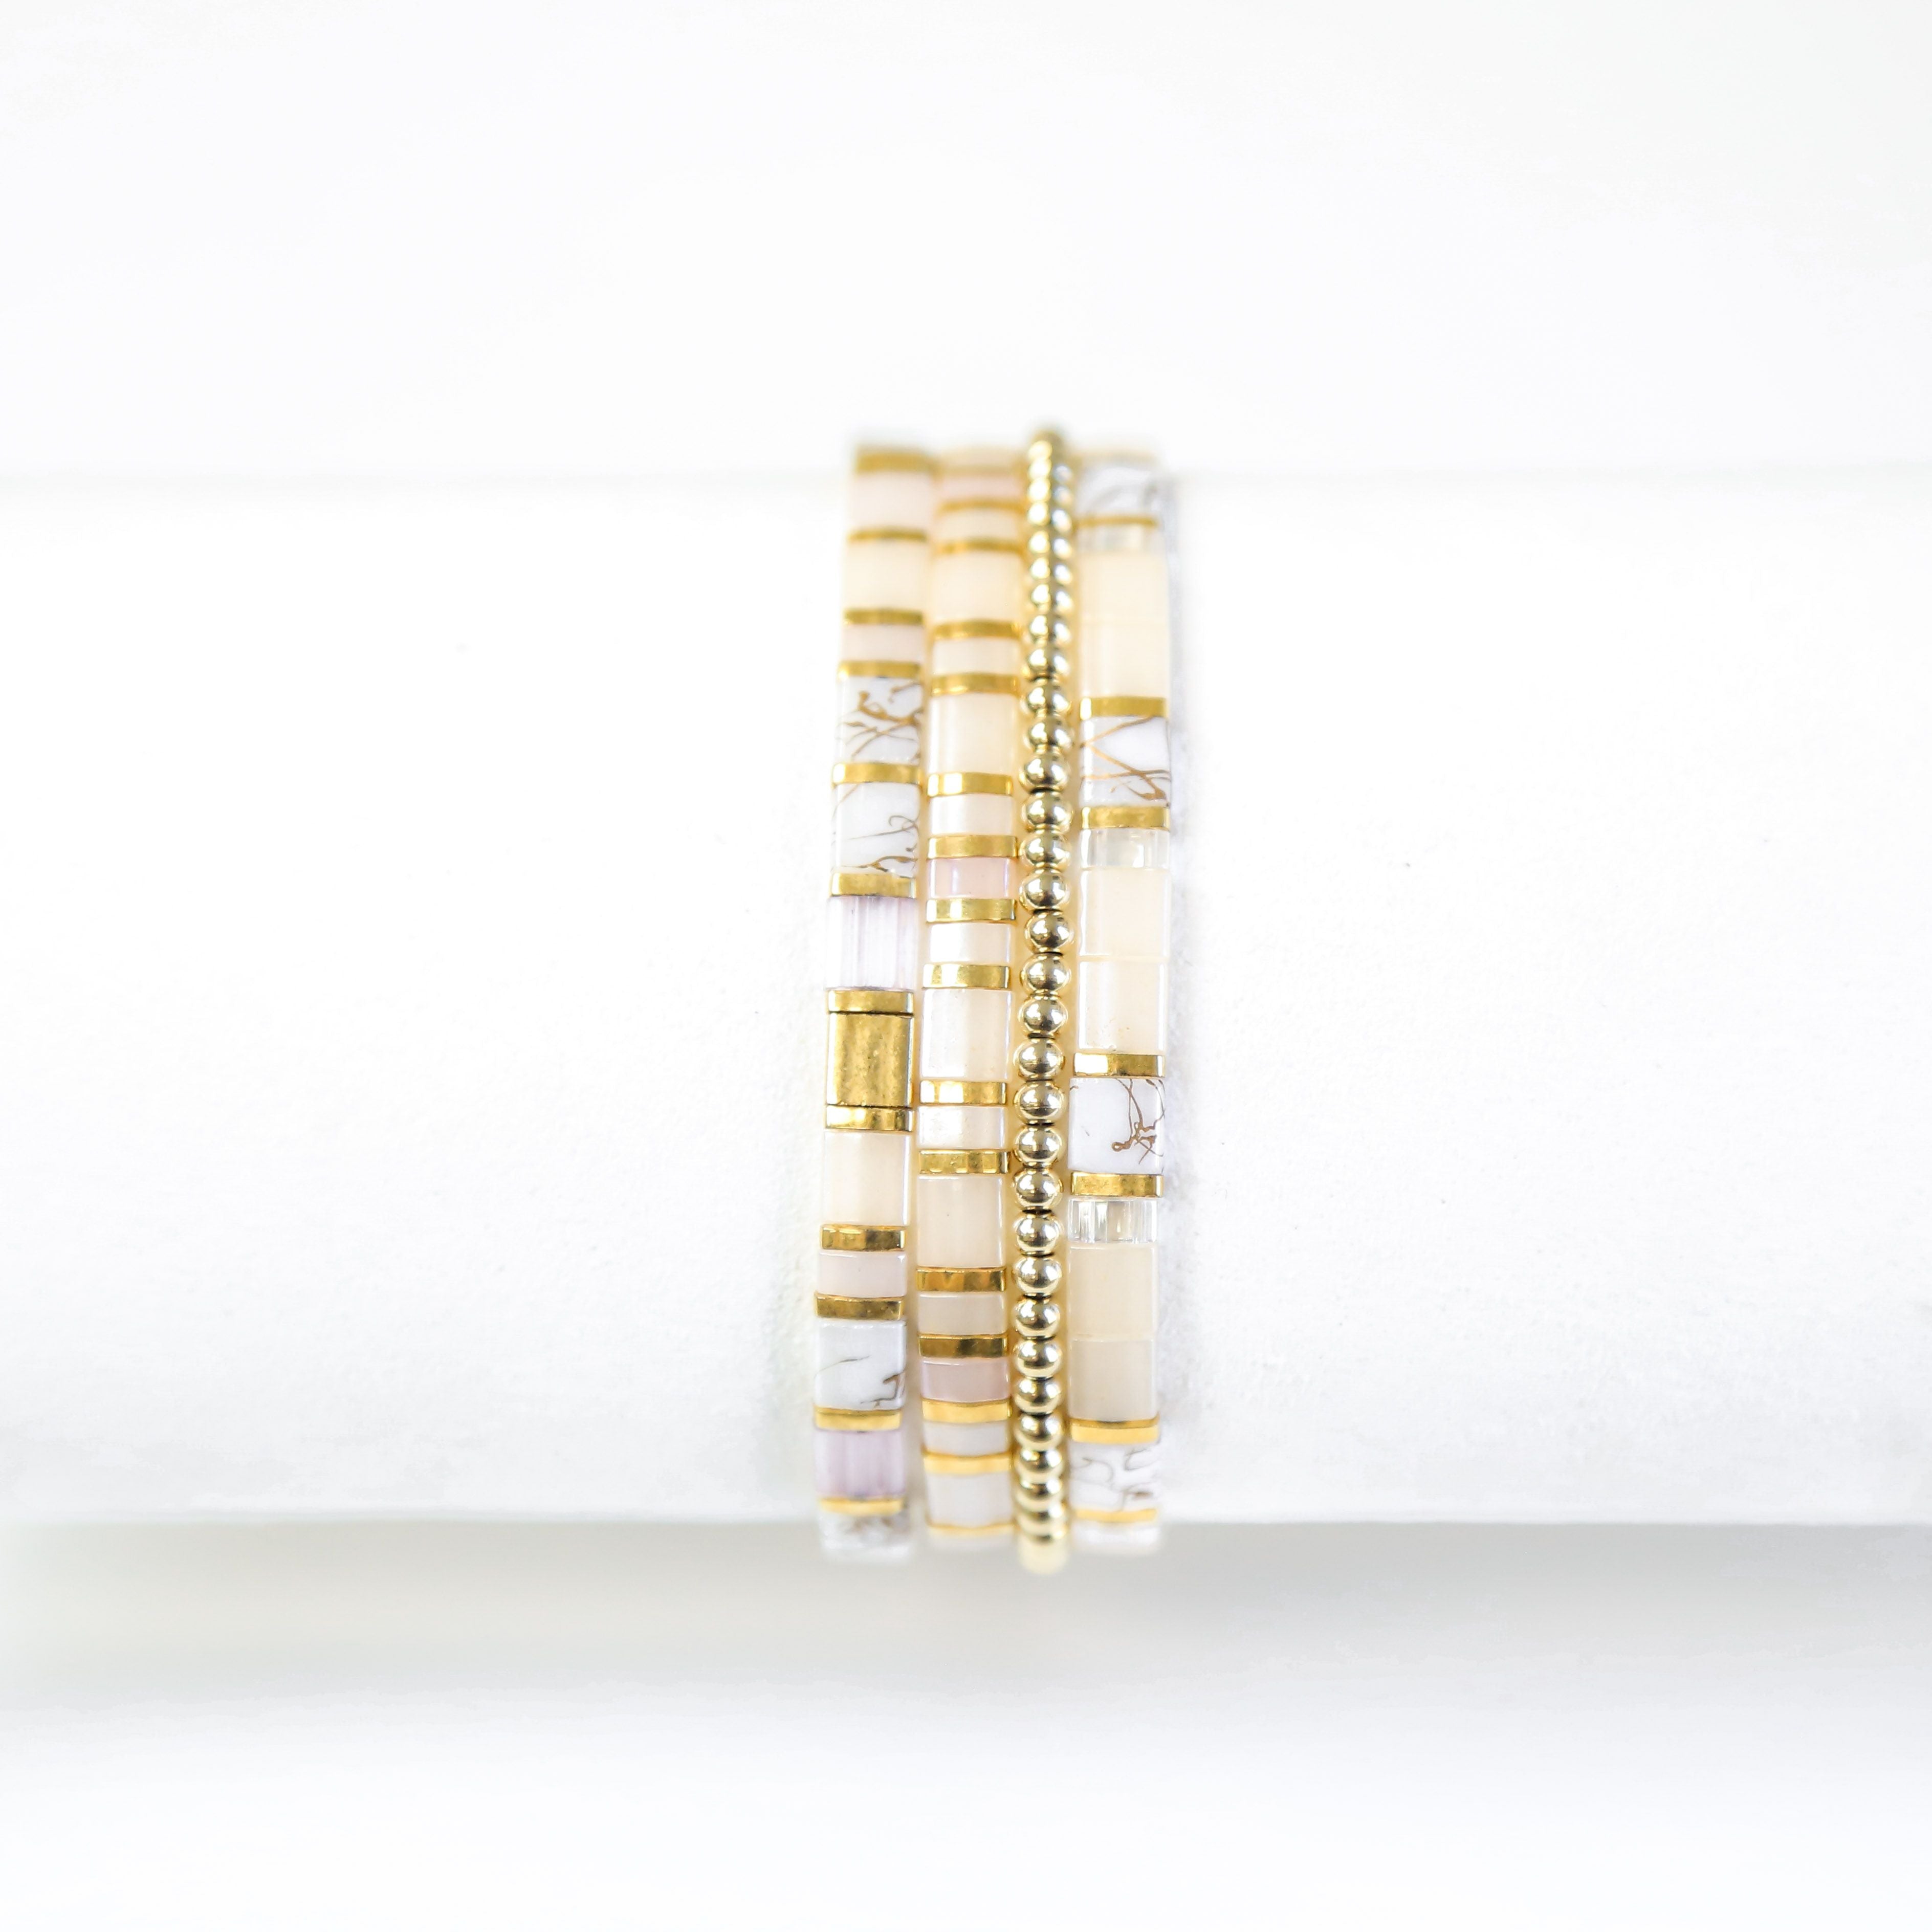 a close up of a stack of bracelets